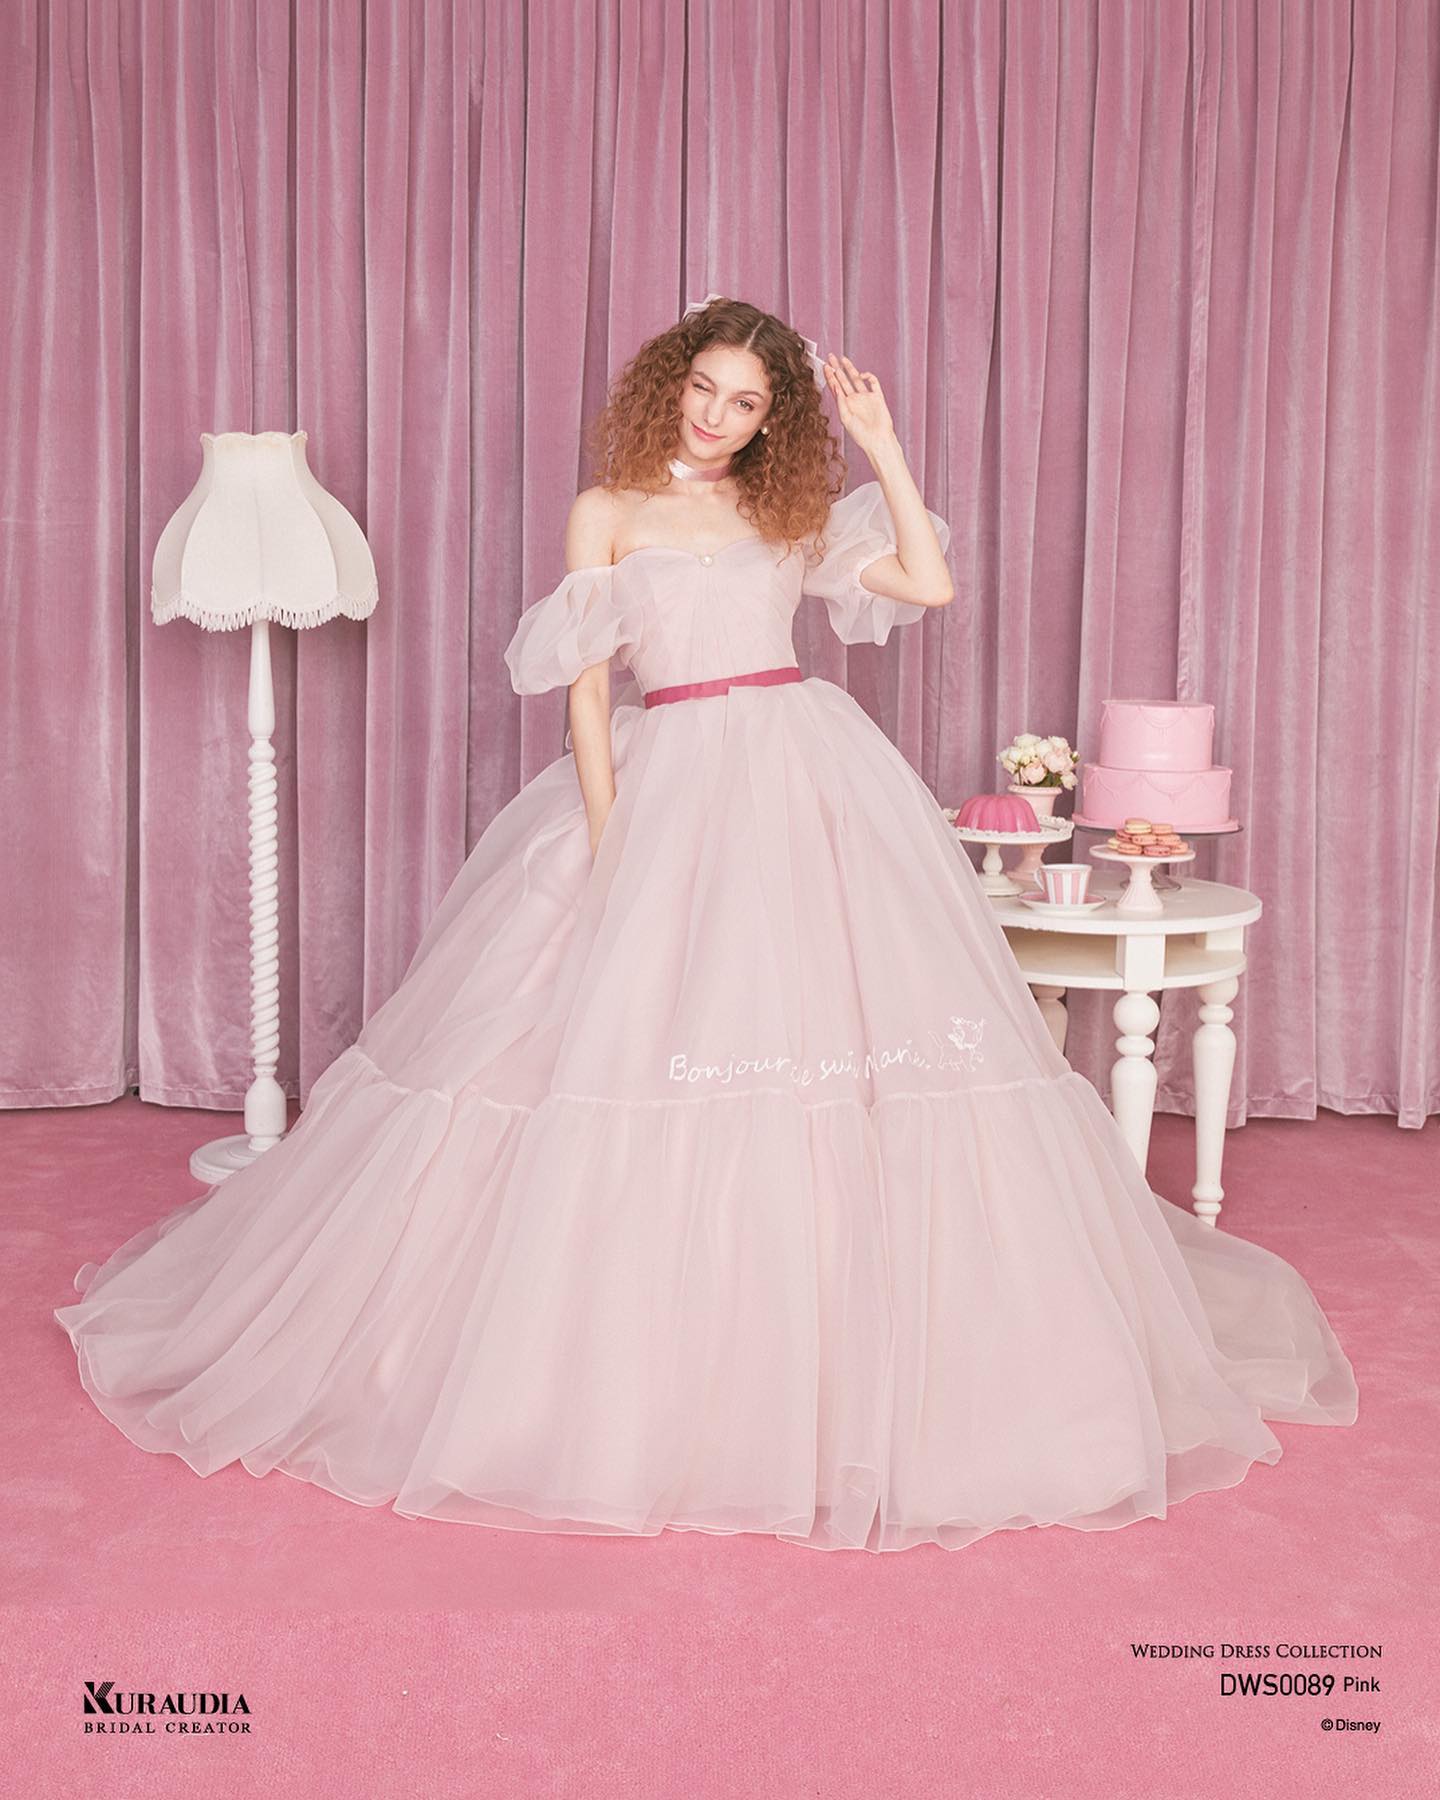 🕊カラードレス 取り寄せ商品 🕊DWS0089( pink )・【ディズニー ウェディングドレスコレクション】DWS0089( pink ) ※ご試着をご希望の場合は、ご予約時にお申し出ください。 ・繊細な透け感とシボによる独特な表面感が素敵なサテンオー ガンジーで品を出しつつ、パフスリーブやリボン、切り替え スカートなど「マリー」のフェミニンさを演出。さりげない 「マリー」の刺繡も可愛いポイントに・※ ディズニーオフィシャルホテルへの持ち込みはご遠慮いただいております。Disney・#disney #disney_weddingdresscollection #wedding #weddingdress #dress #bridal  #pinkdress  #pink #ディズニー #ディズニーウエディングドレスコレクション #ウェディングドレス #ピンクドレス #結婚式#結婚#プレ花嫁#卒花嫁#花嫁#おしゃれキャットマリー#マリーちゃん#クラウディア#kuraudia#ブライダルヒロ